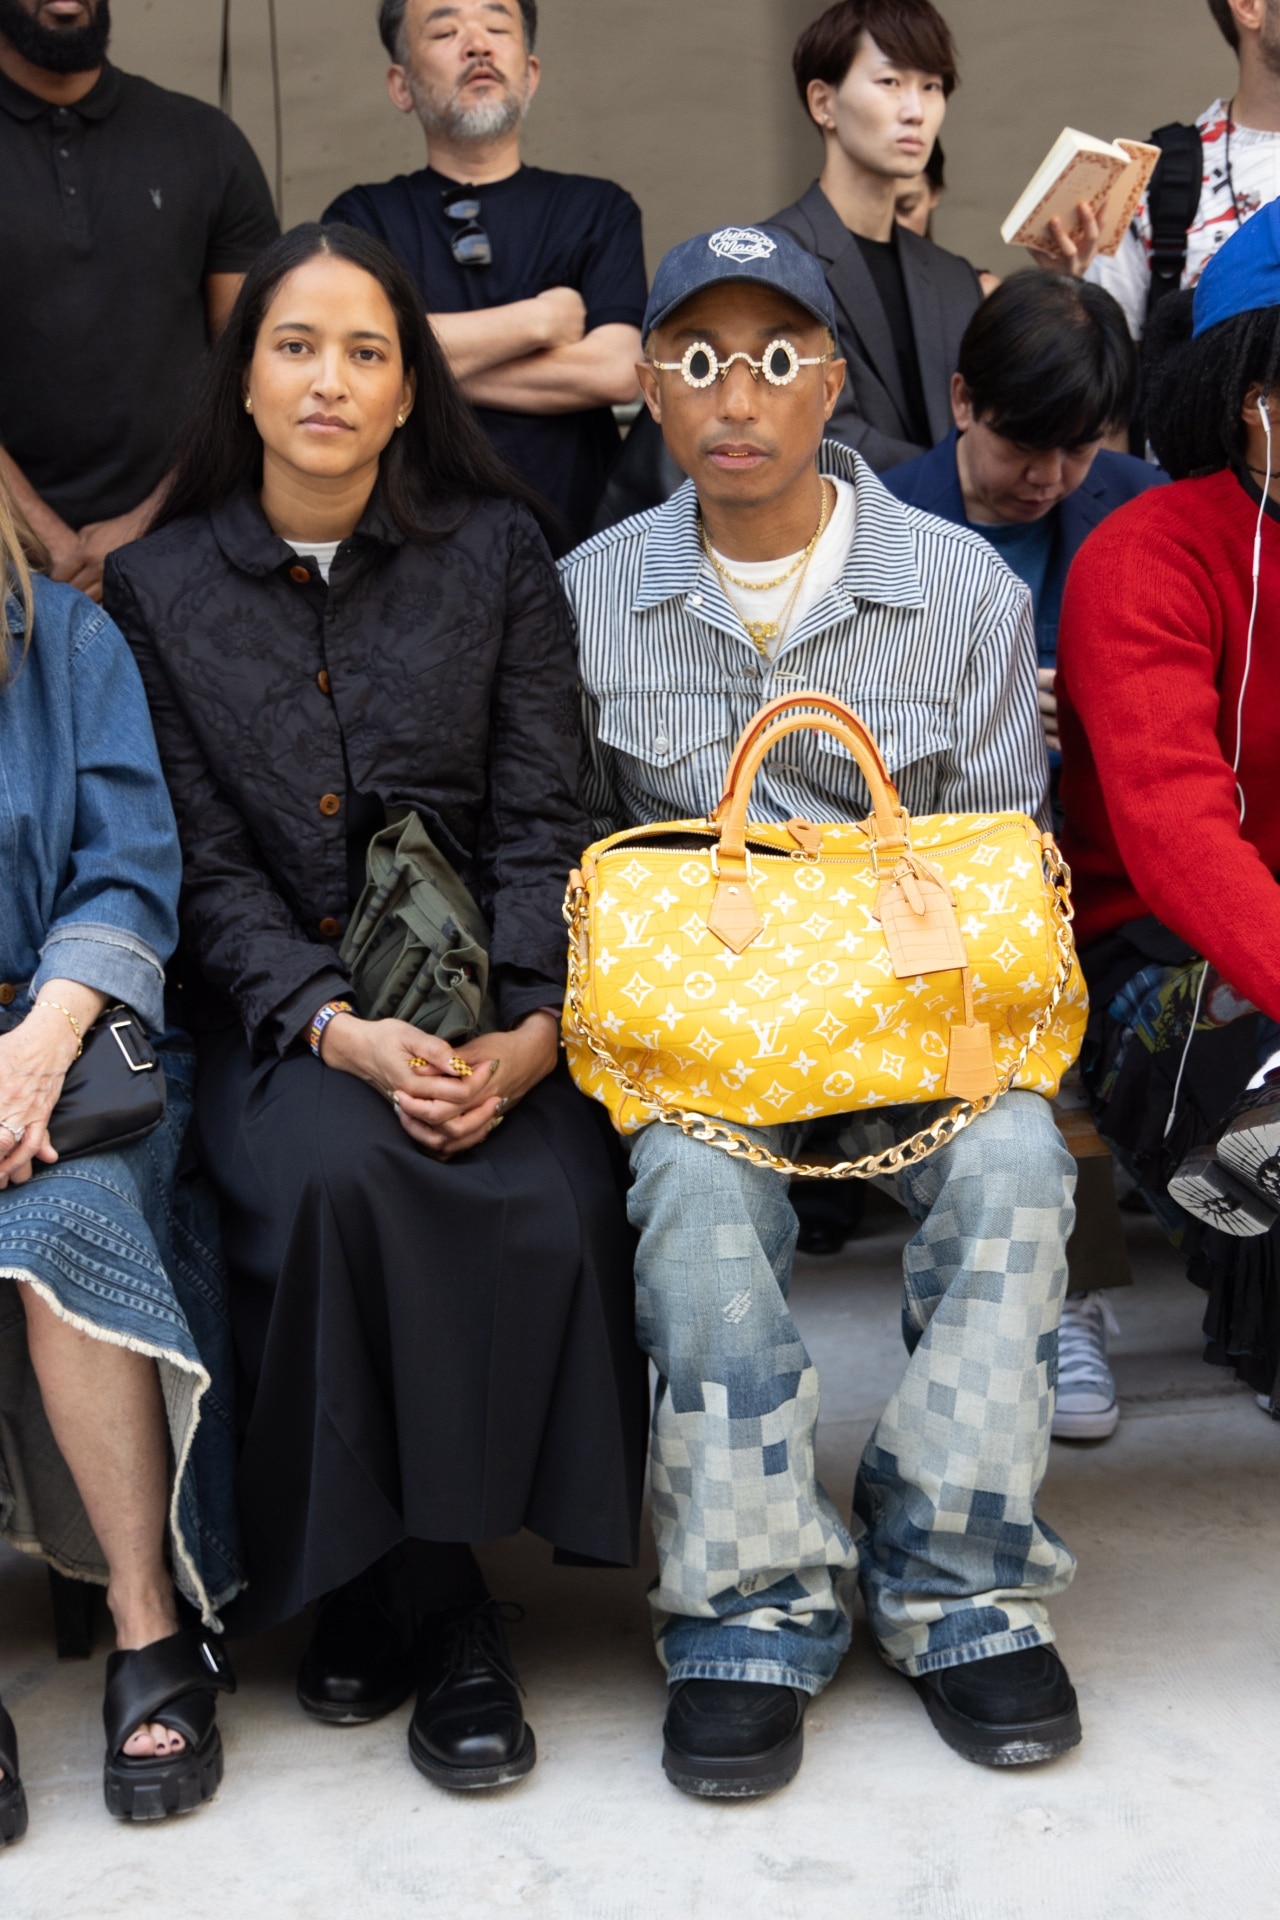 Pharrell Details His 'Millionaire' Louis Vuitton Duffle Bag